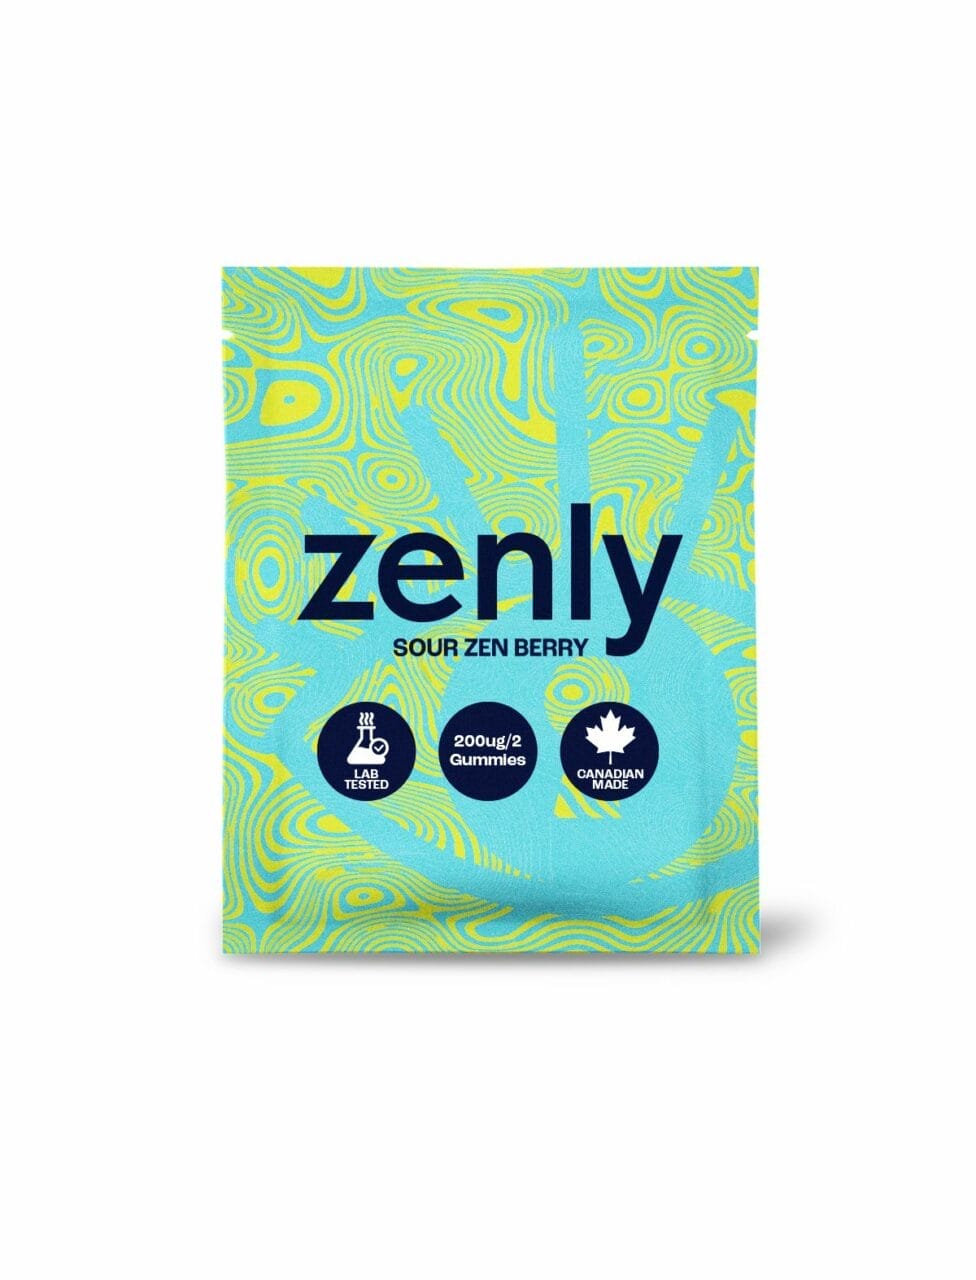 Zenly - Sour Zen Berry